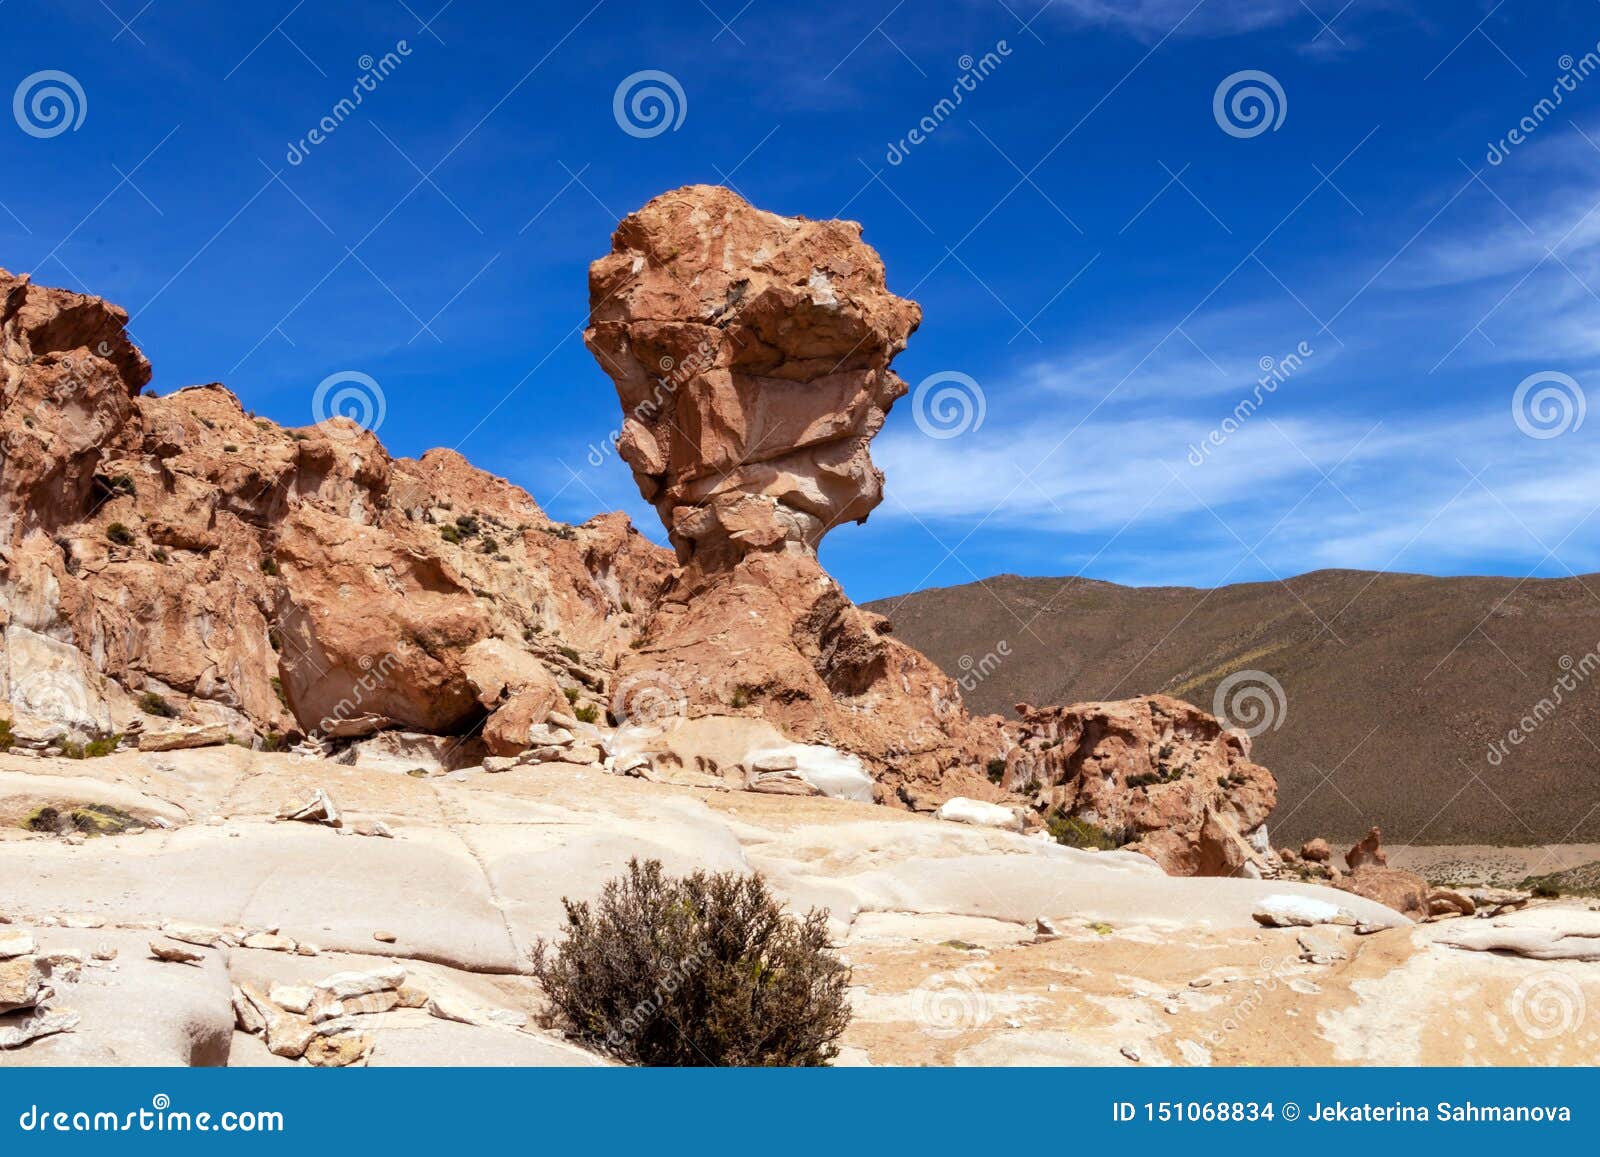 rock formation called copa del mondo or world cup in the bolivean altiplano - potosi department, bolivia